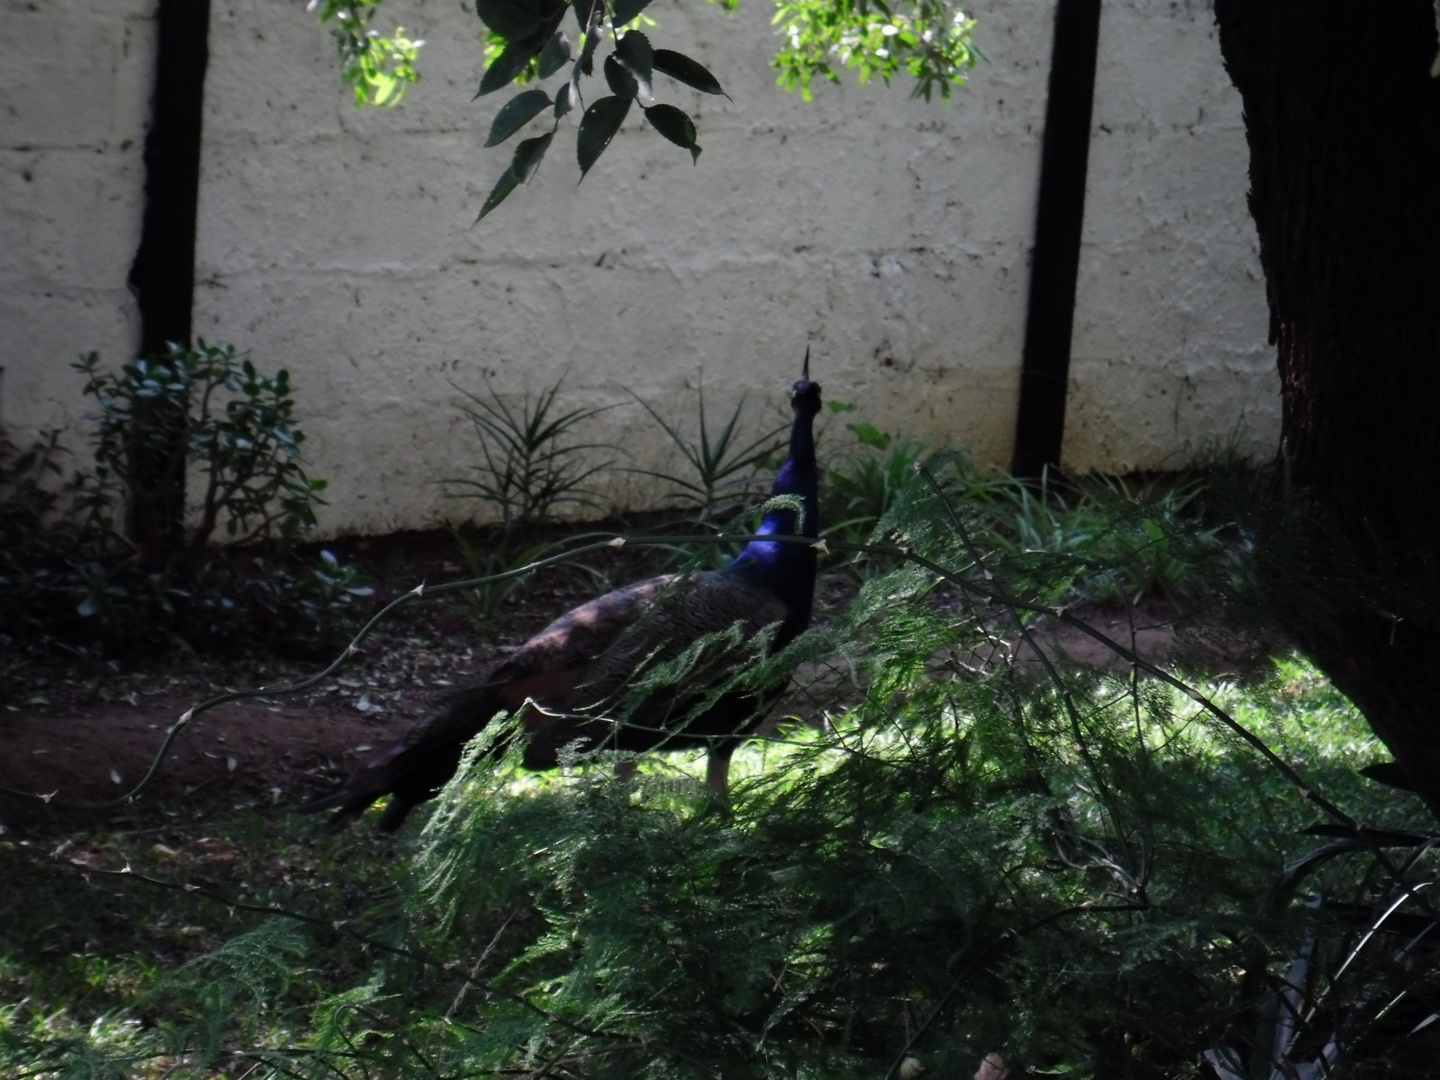 Peacock in my garden.